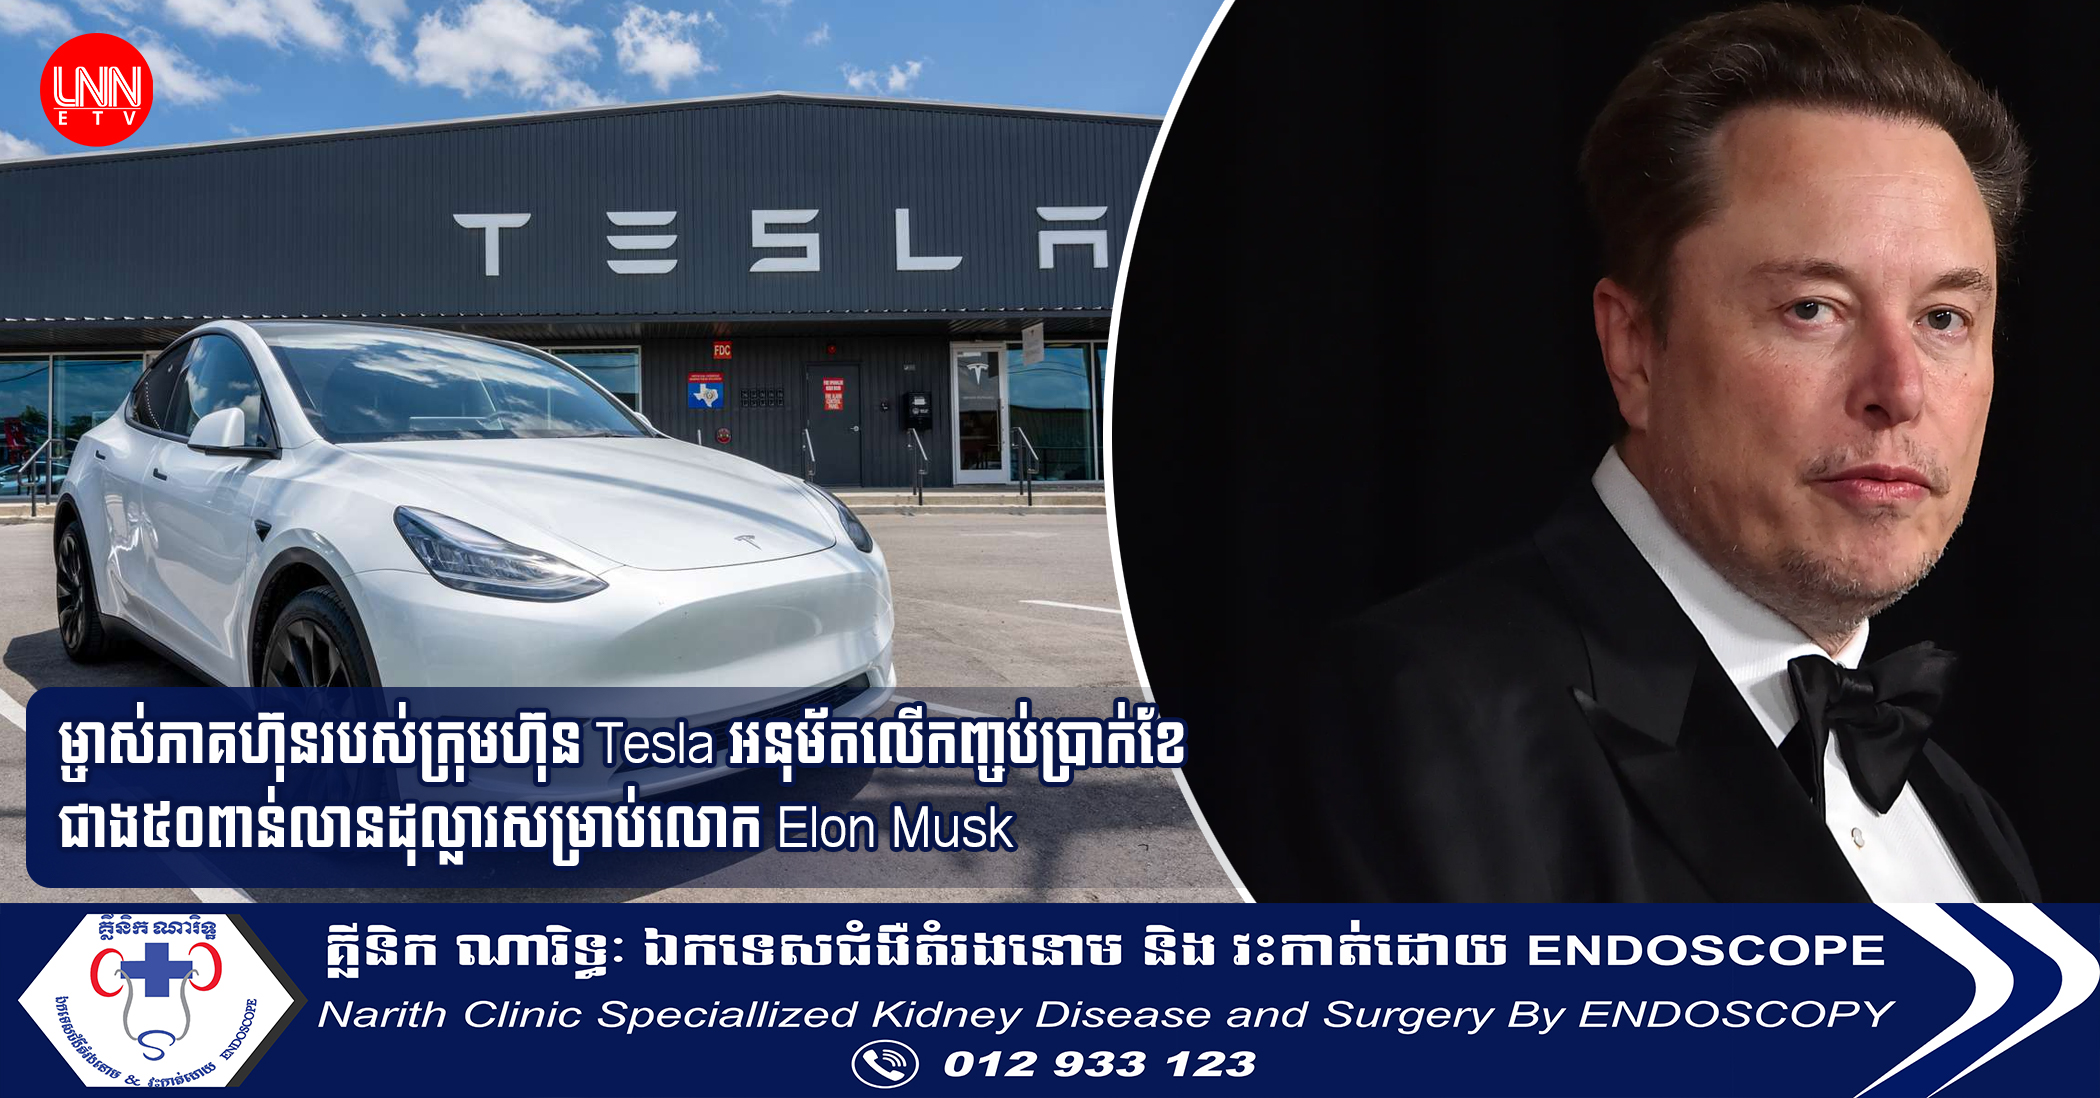 ម្ចាស់ភាគហ៊ុនរបស់ក្រុមហ៊ុន Tesla អនុម័តលើកញ្ចប់ប្រាក់ខែជាង៥០ពាន់លានដុល្លារសម្រាប់លោក Elon Musk